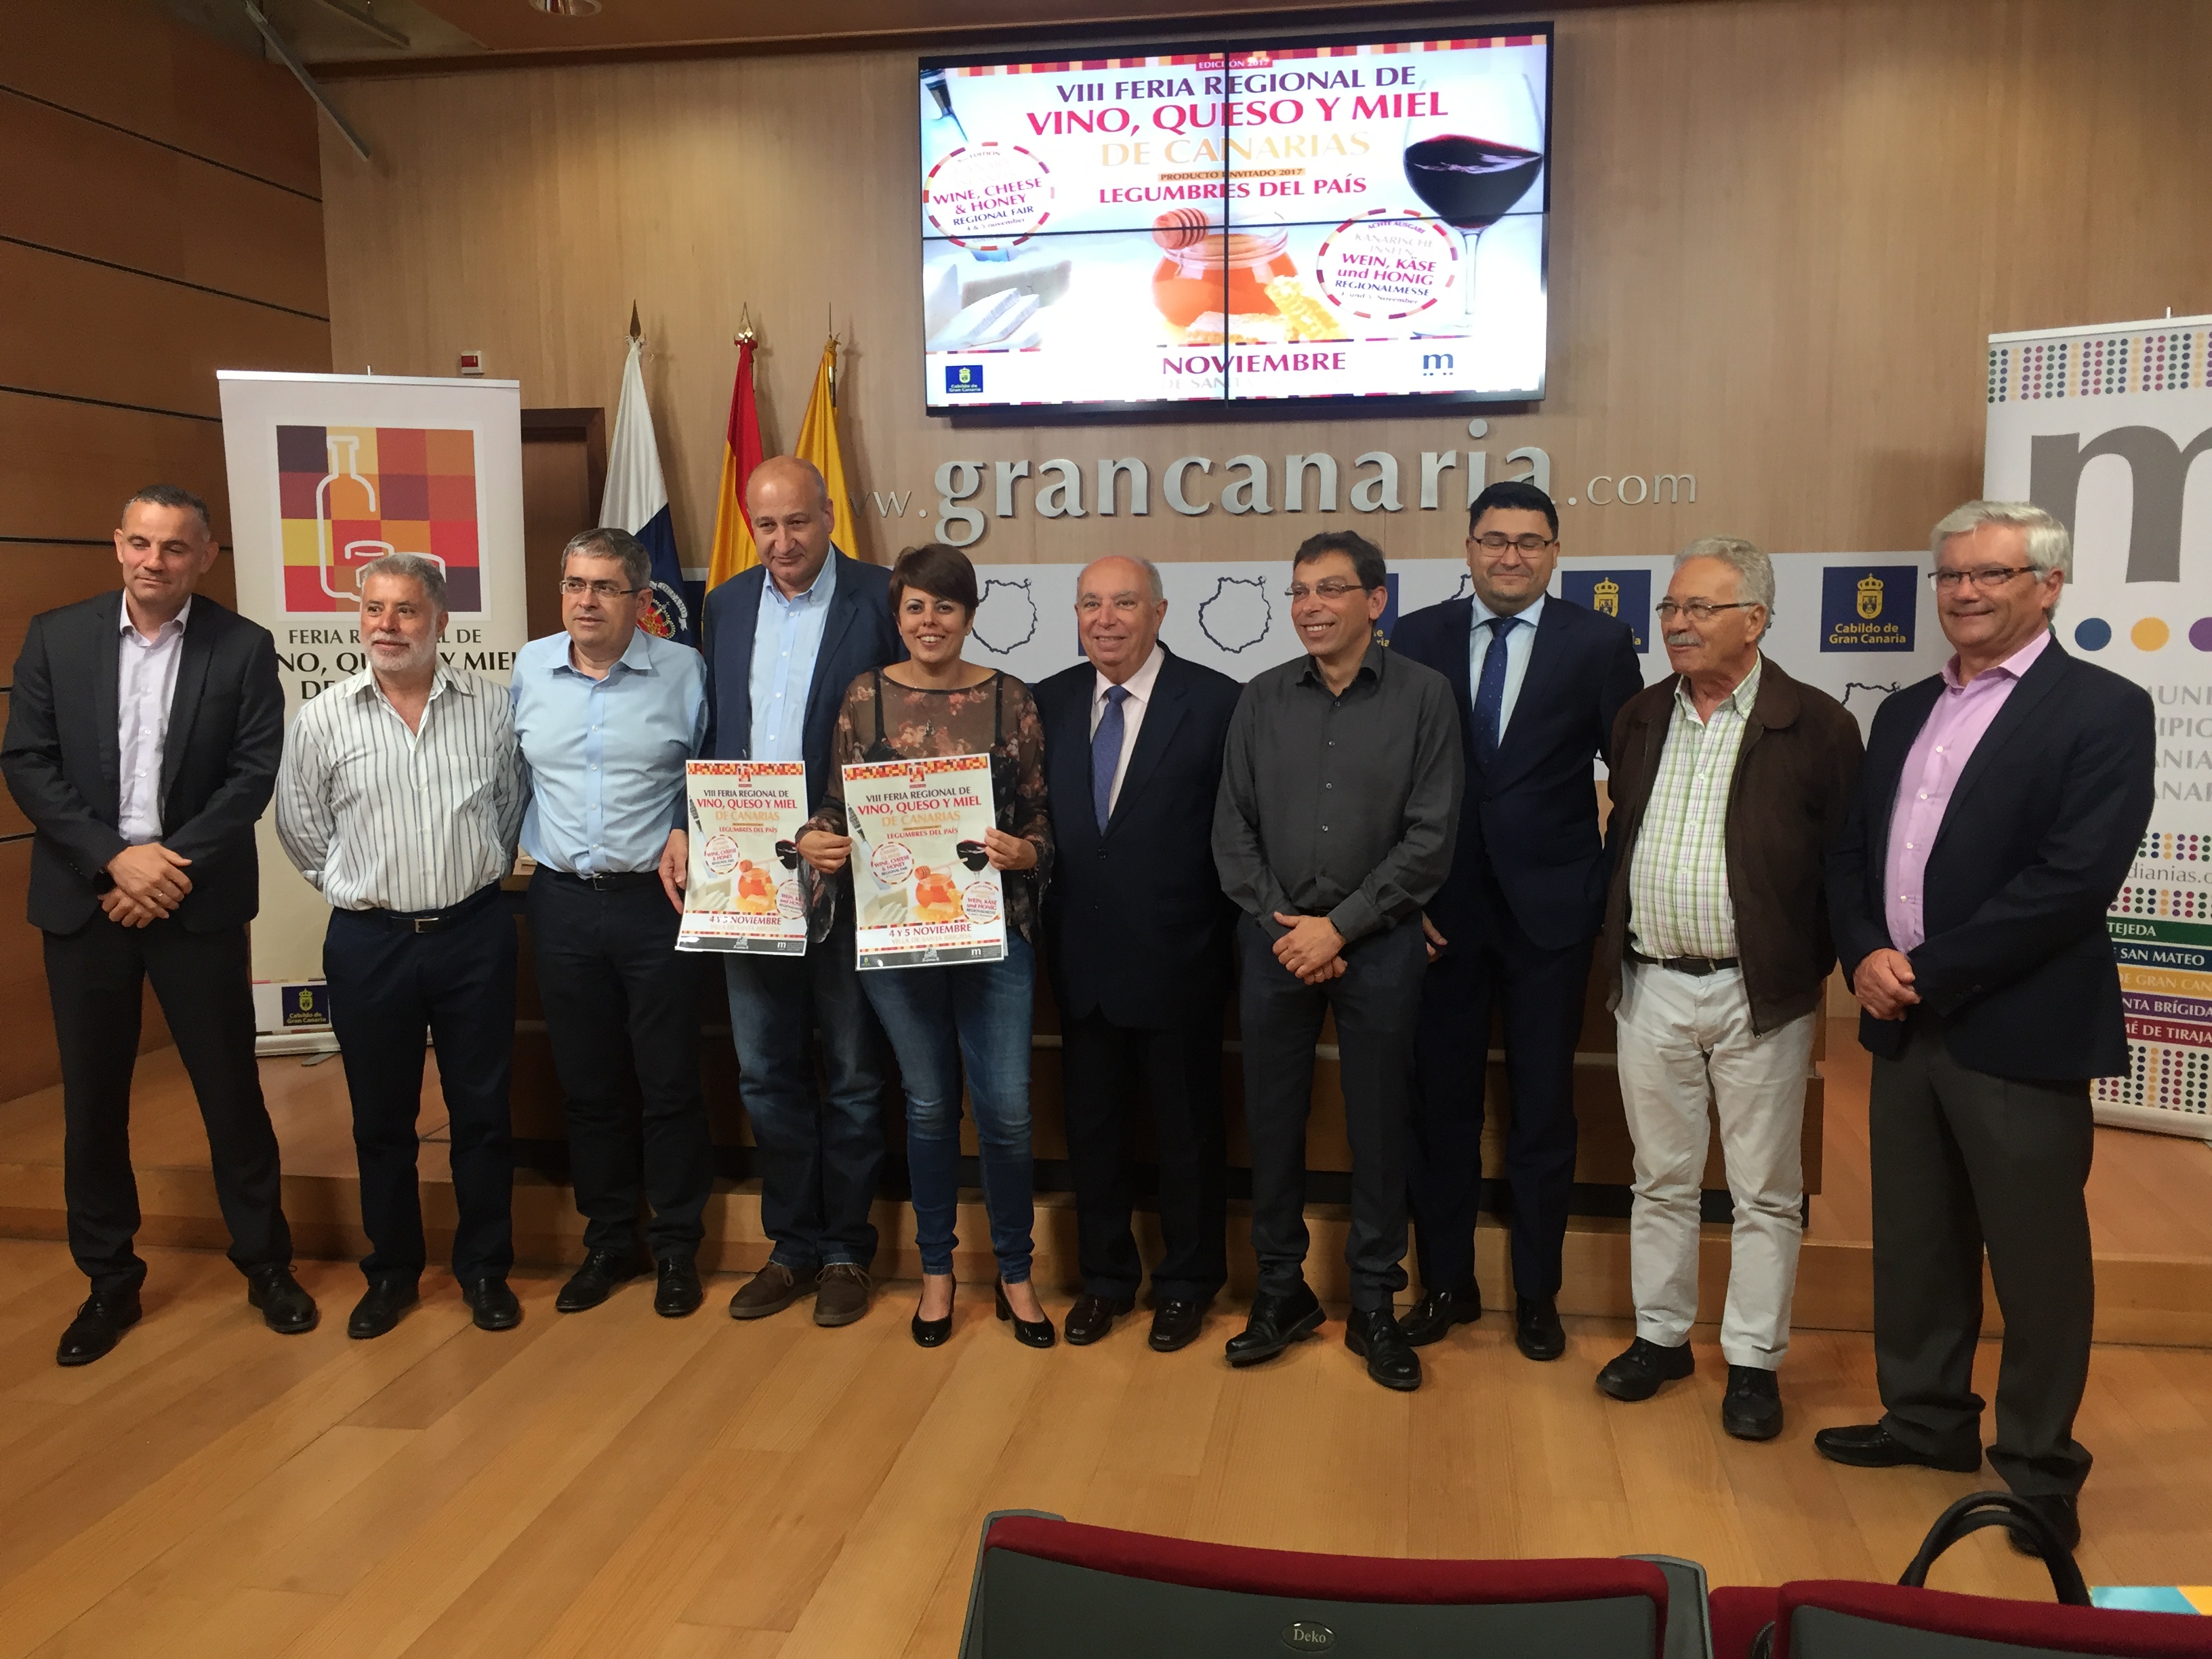 La Feria Regional del Vino, Queso y Miel tendrá a las legumbres como estrella invitada en Gran Canaria